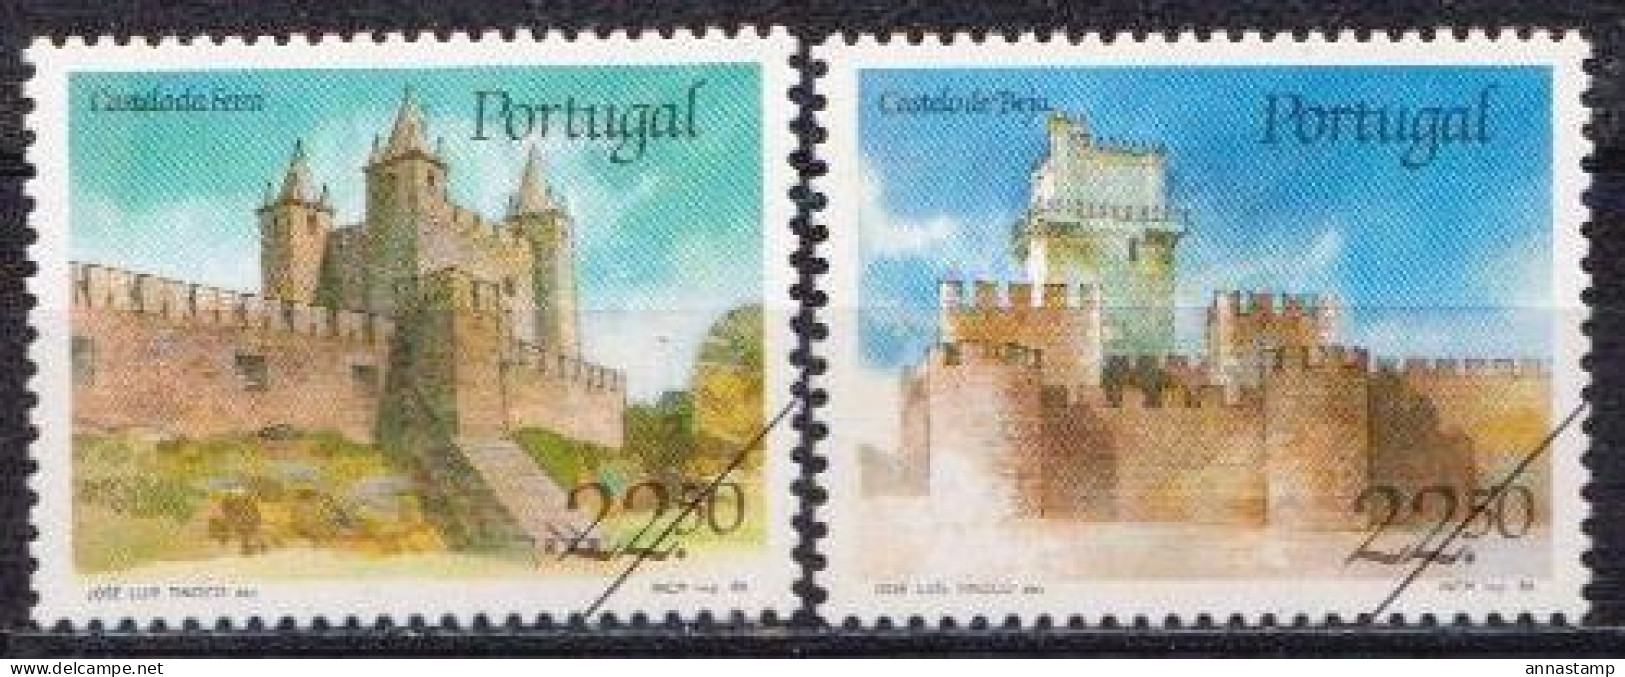 Portugal MNH Stamps, SPECIMEN - Castelli